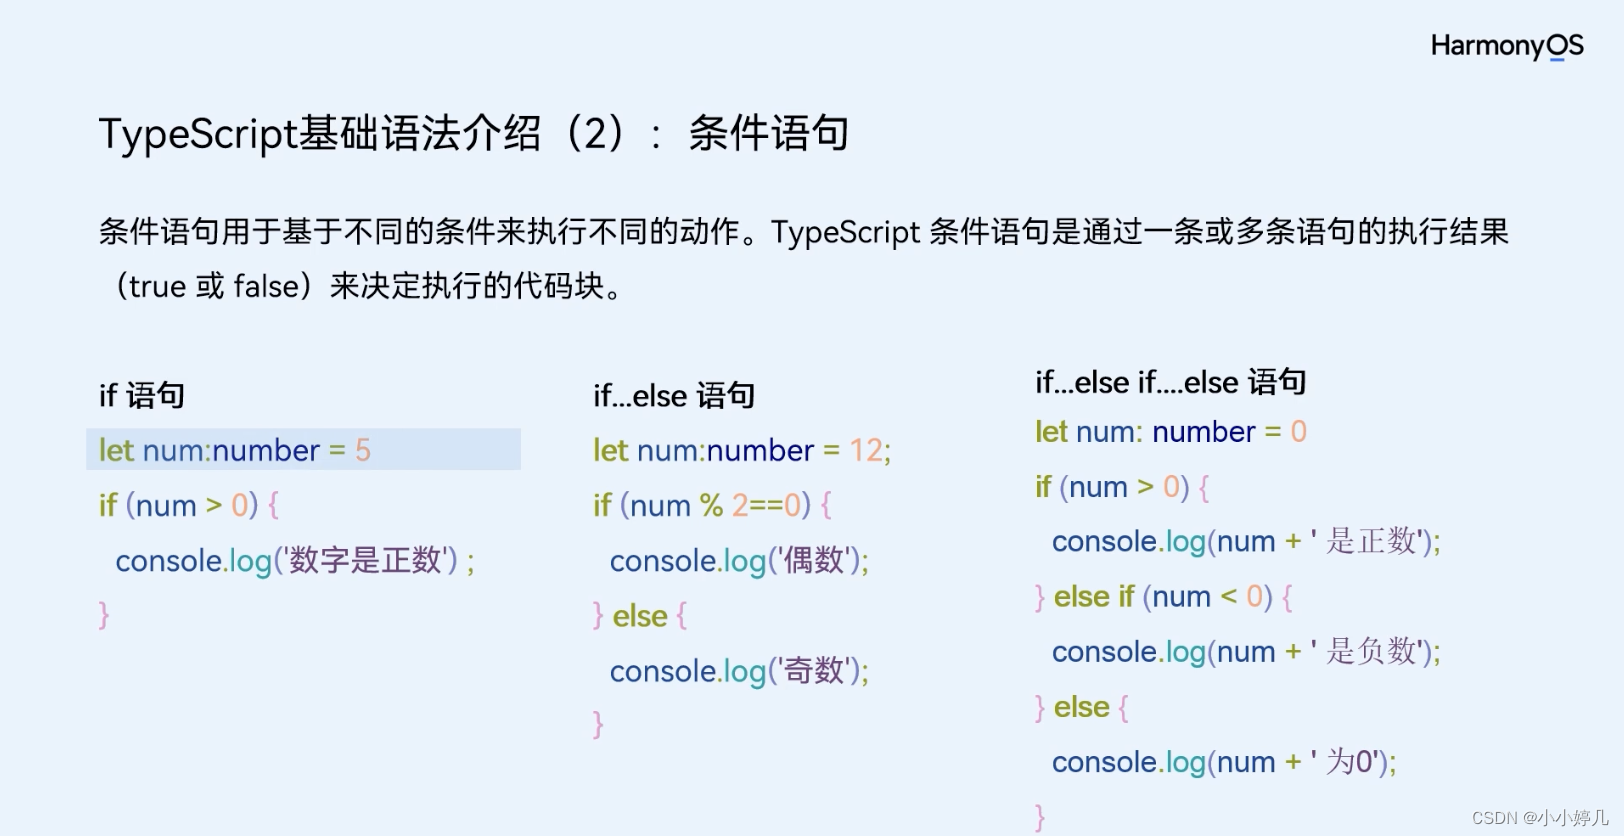 二、typescript基础语法